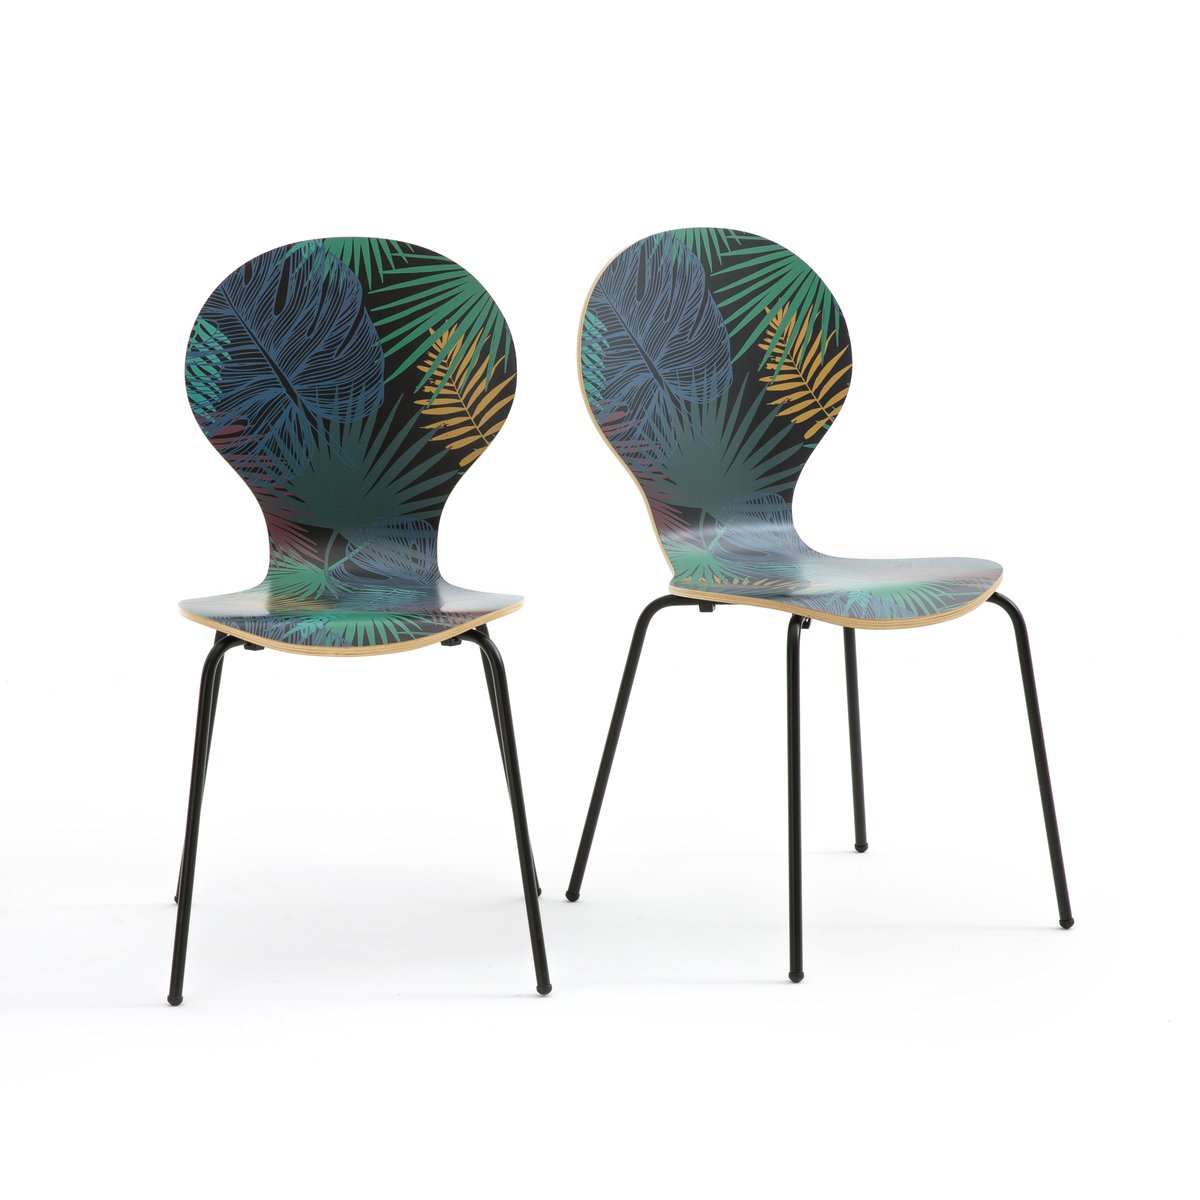 Комплект из 2 стульев с растительным рисунком, RONDA